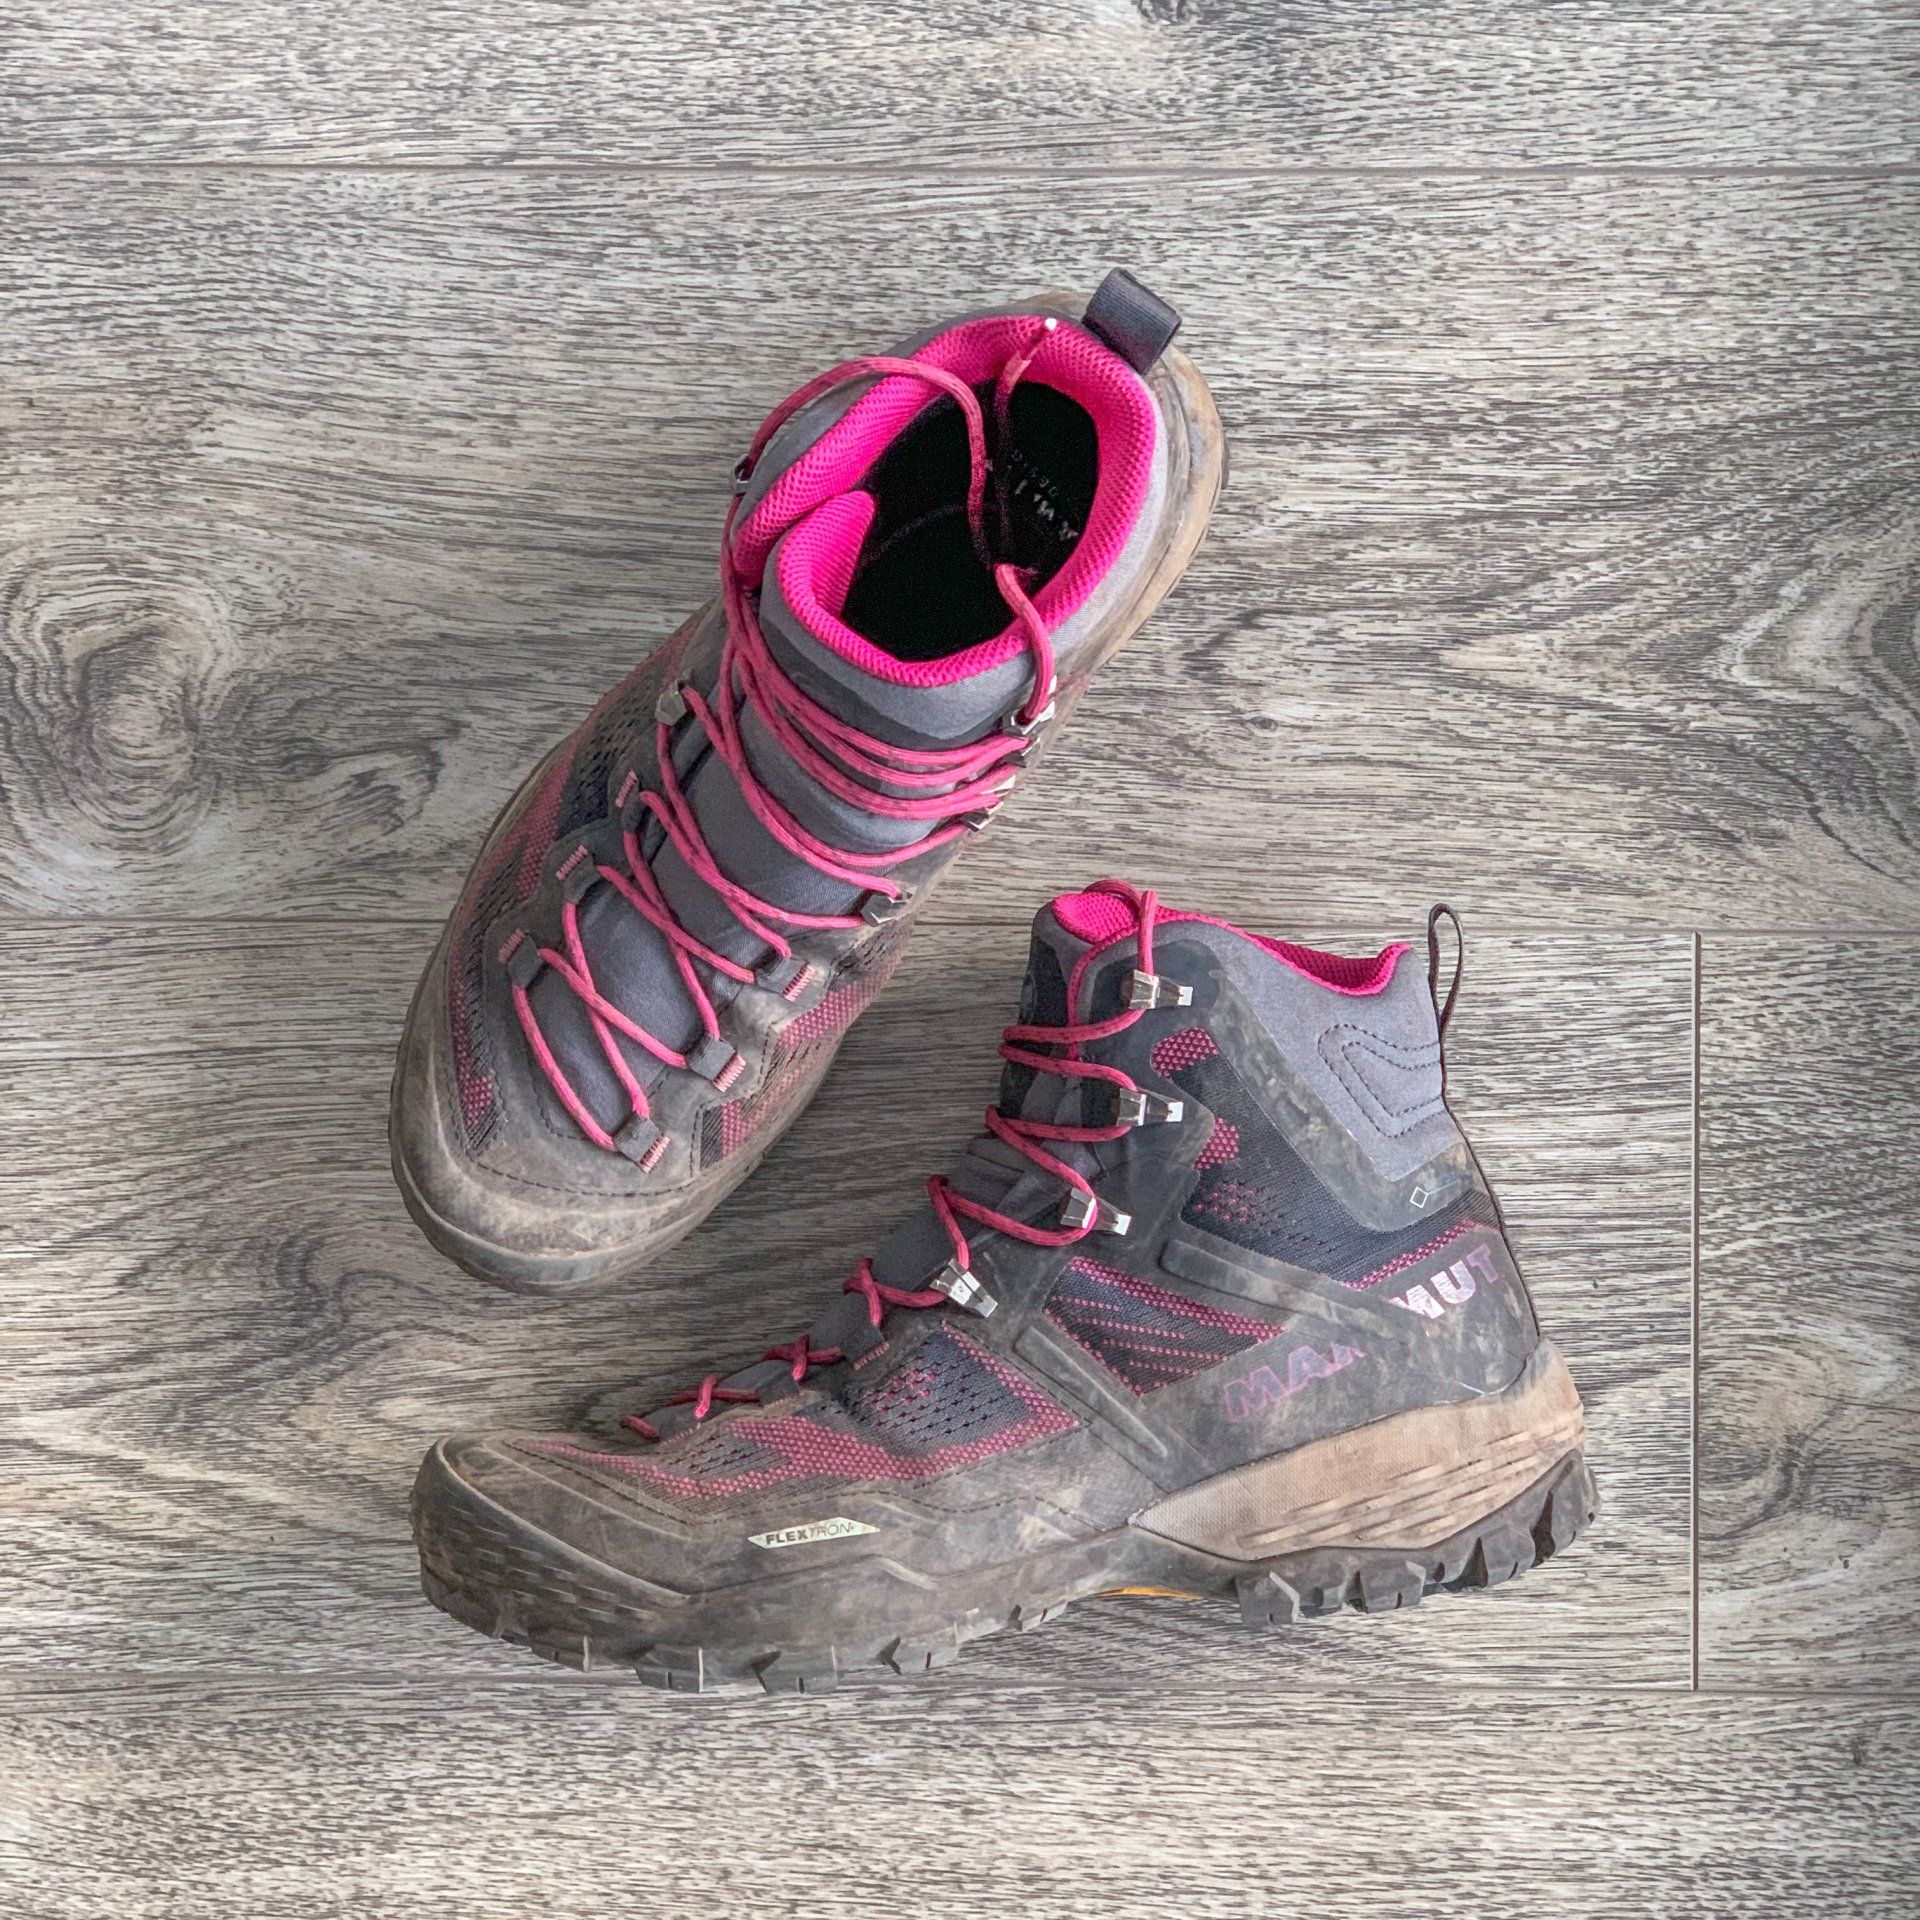 Mammut Ducan High GTX womens hiking boots